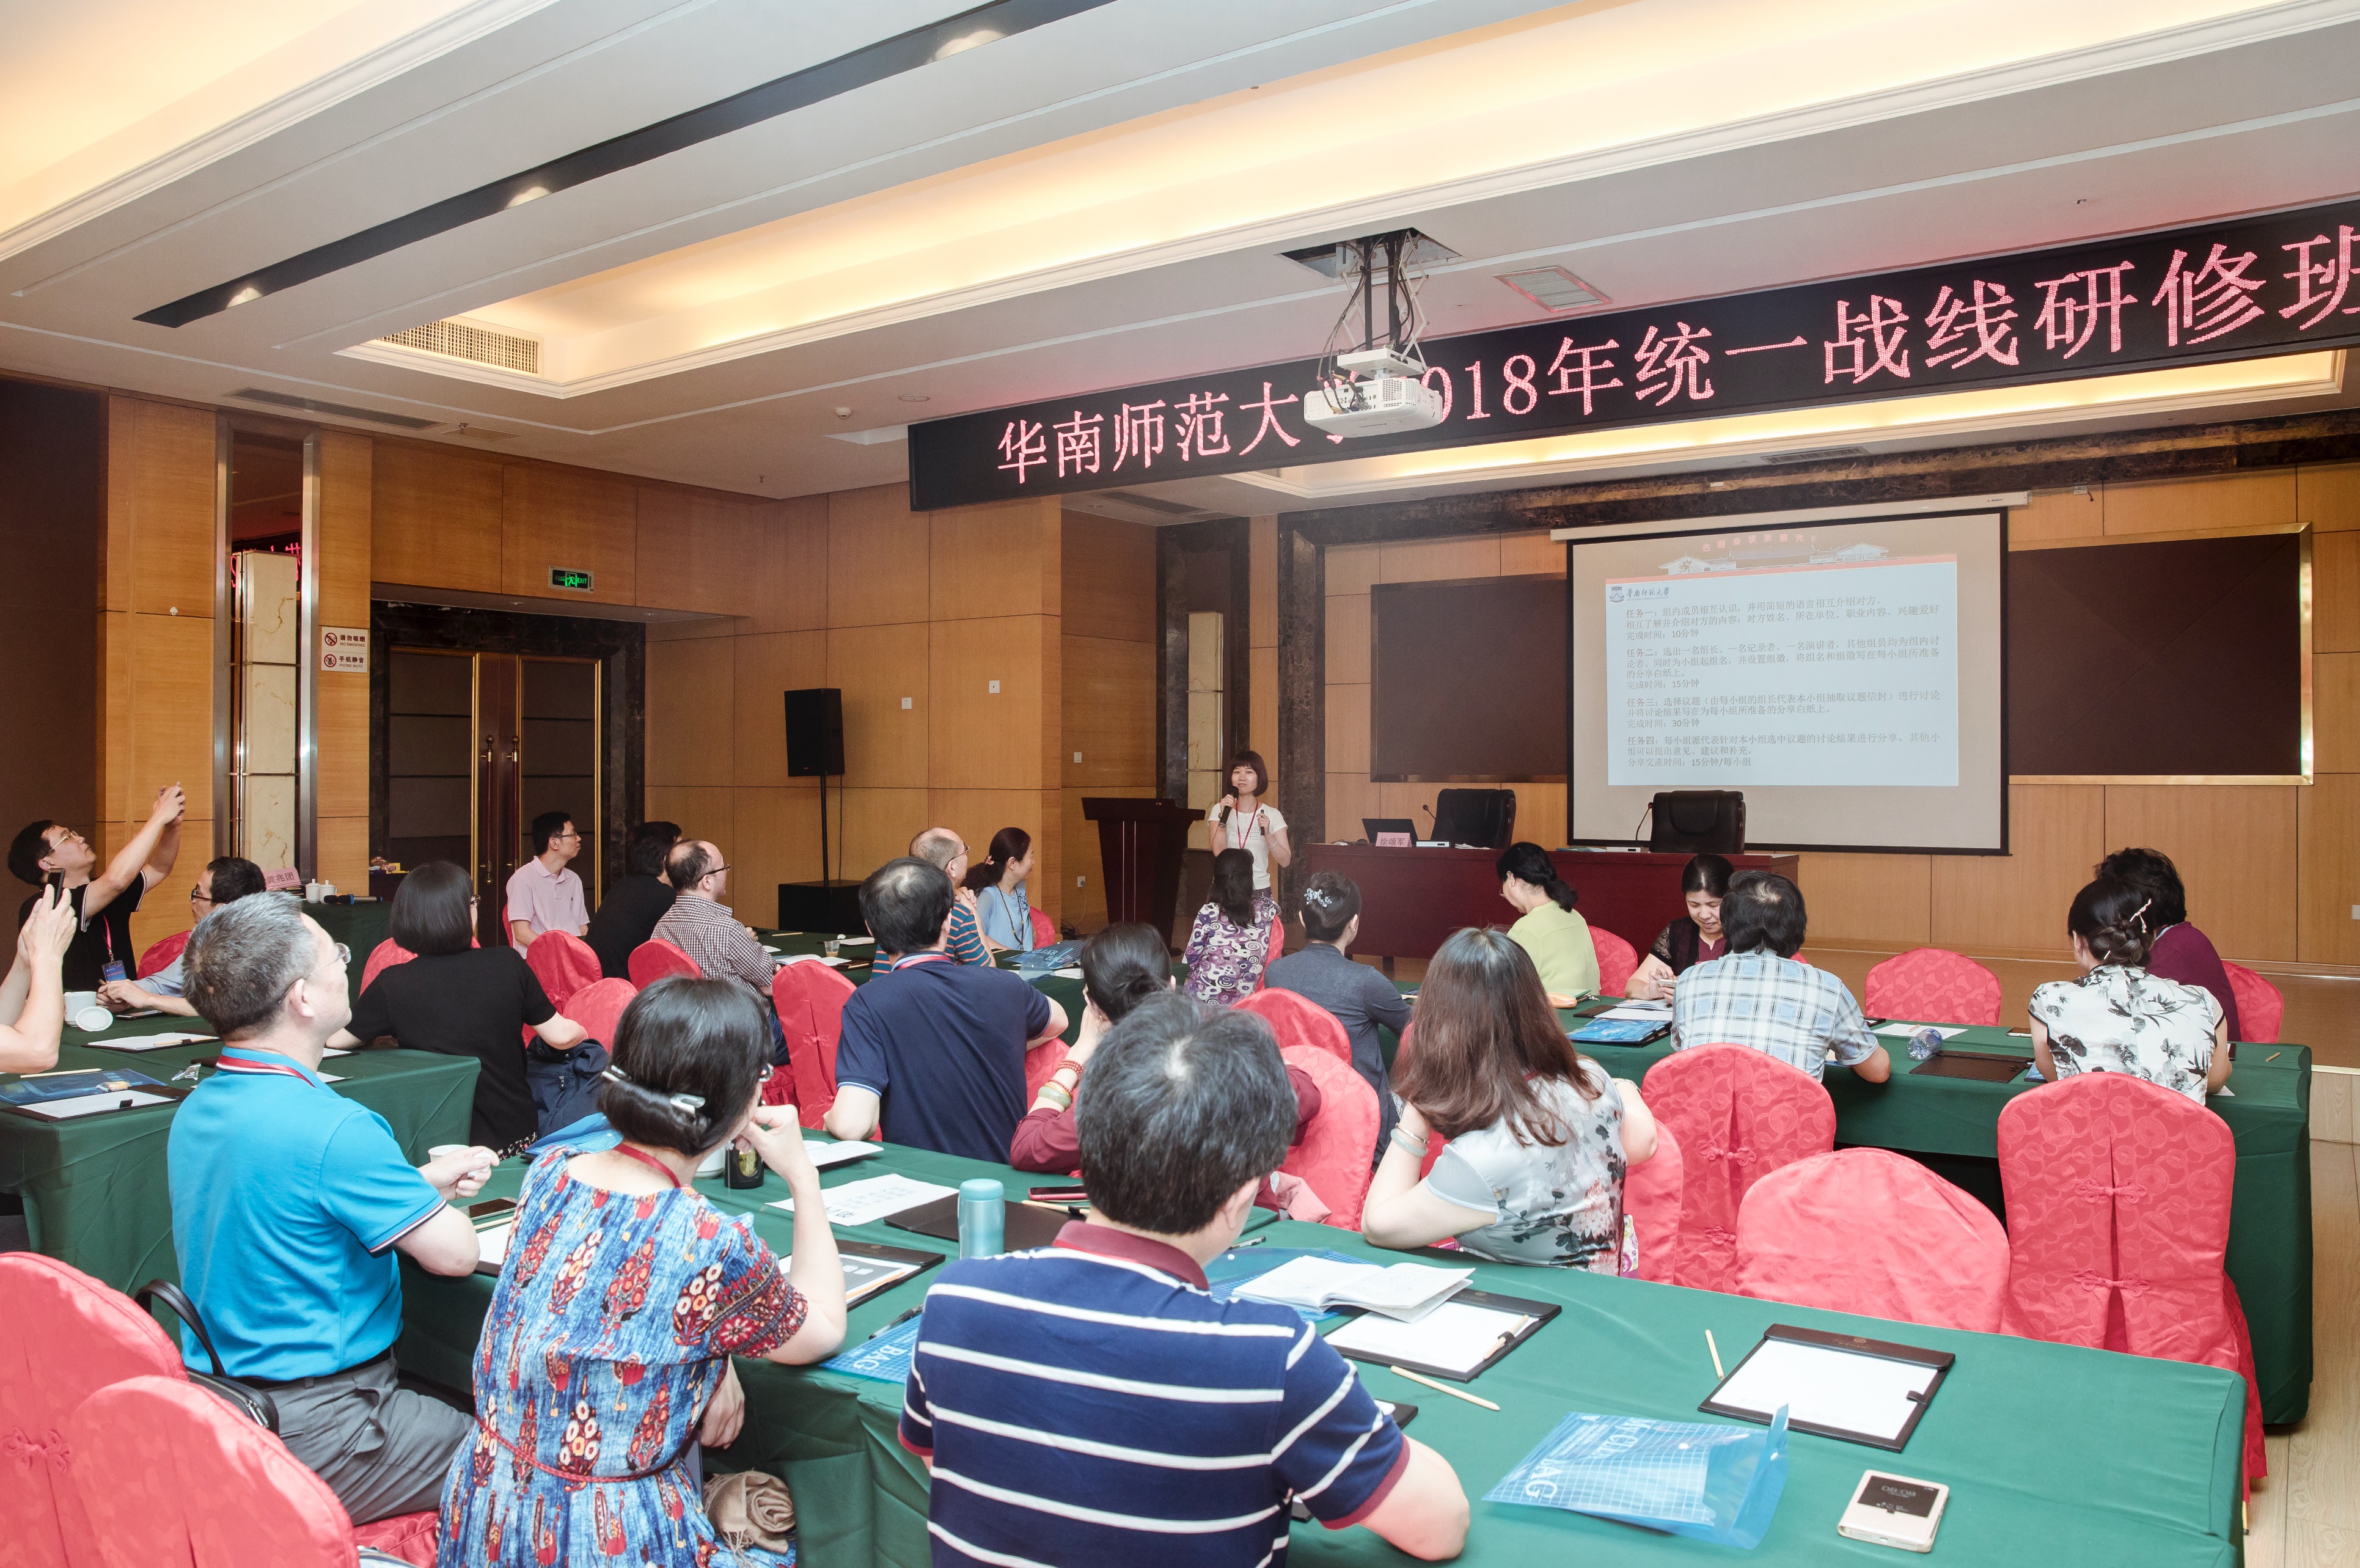 6月30日 华南师范大学2018年统一战线研修班 小组讨论1.jpg